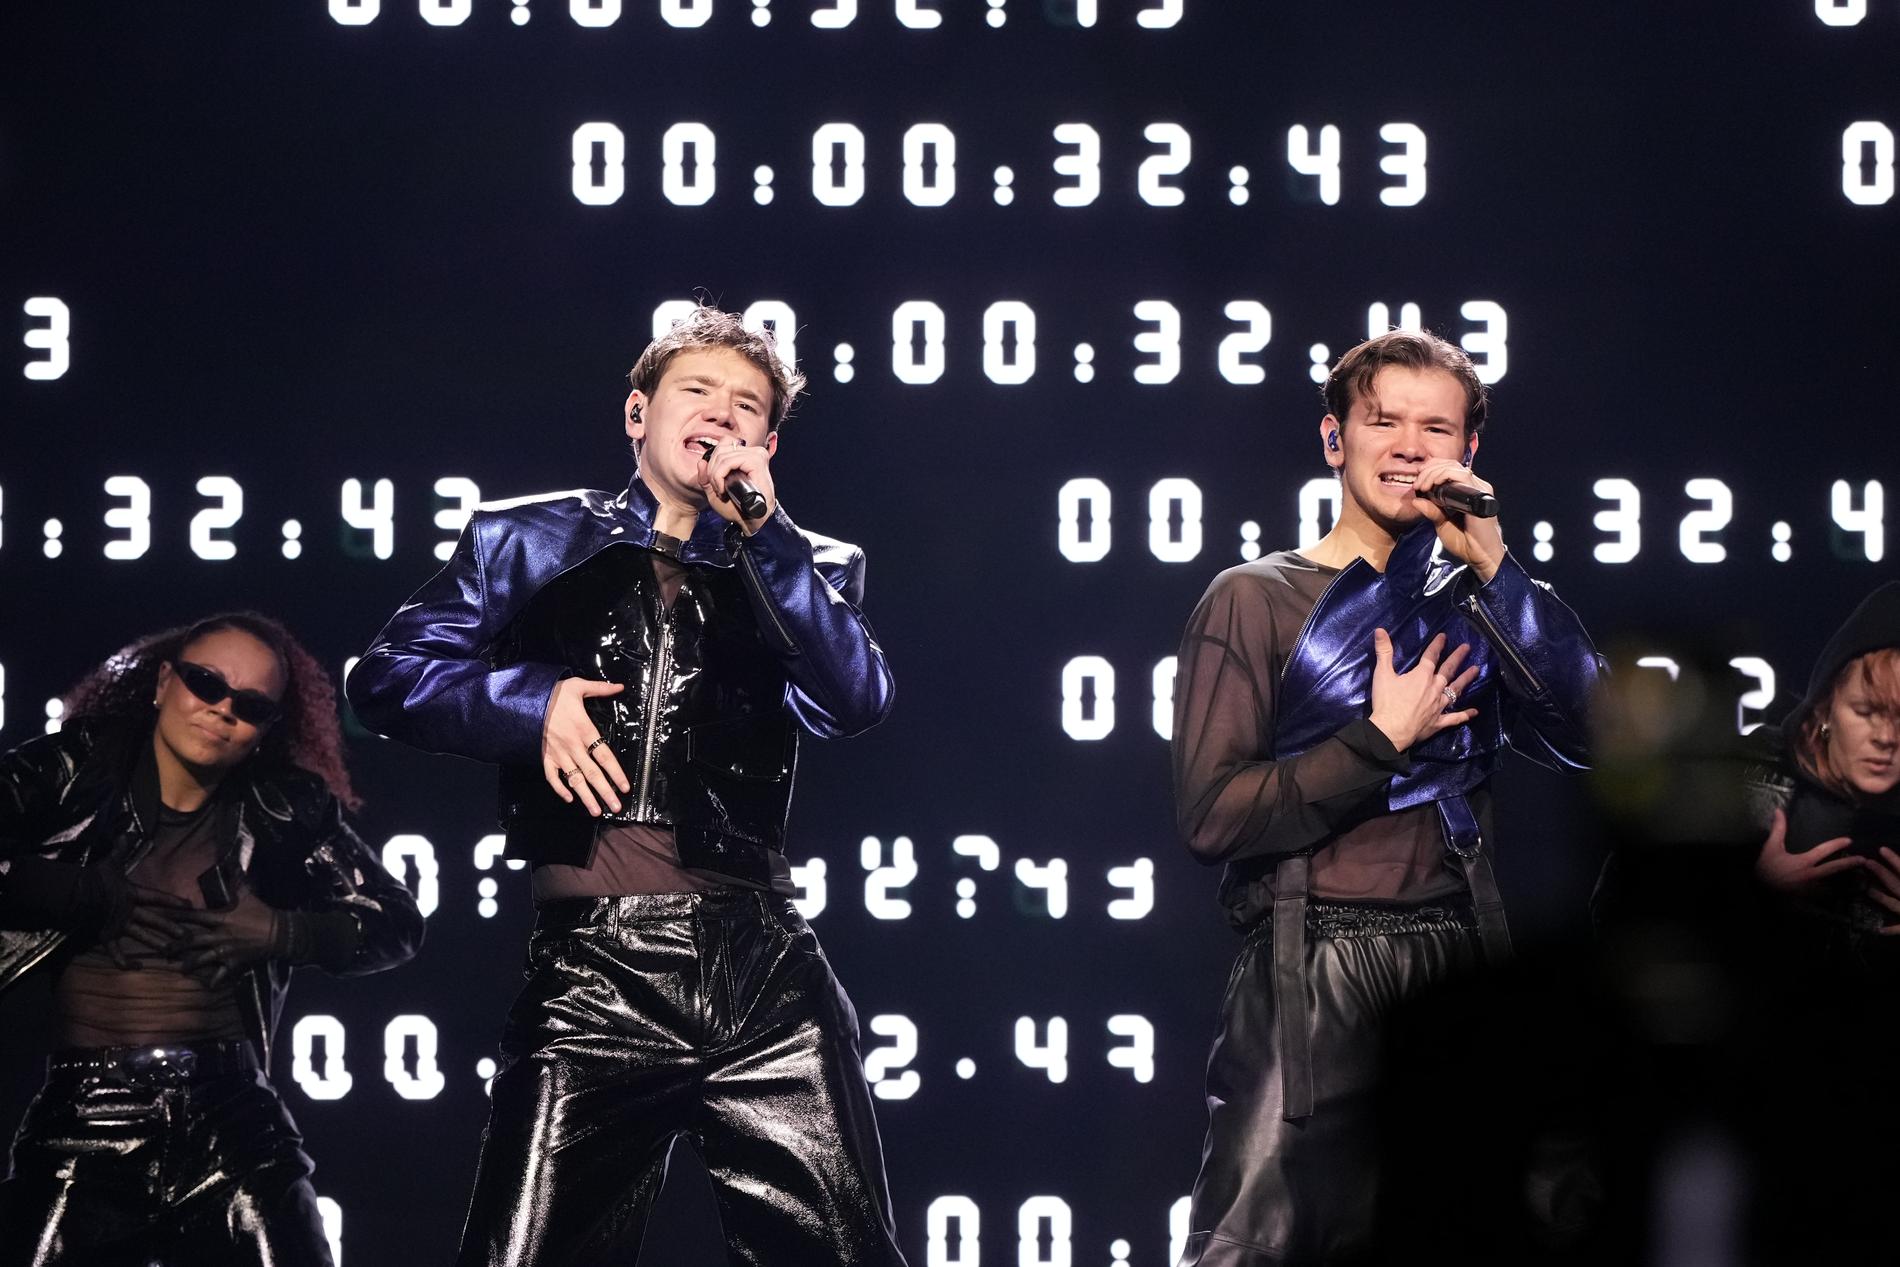 Marcus och Martinus tävlar med låten ”Unforgettable”.